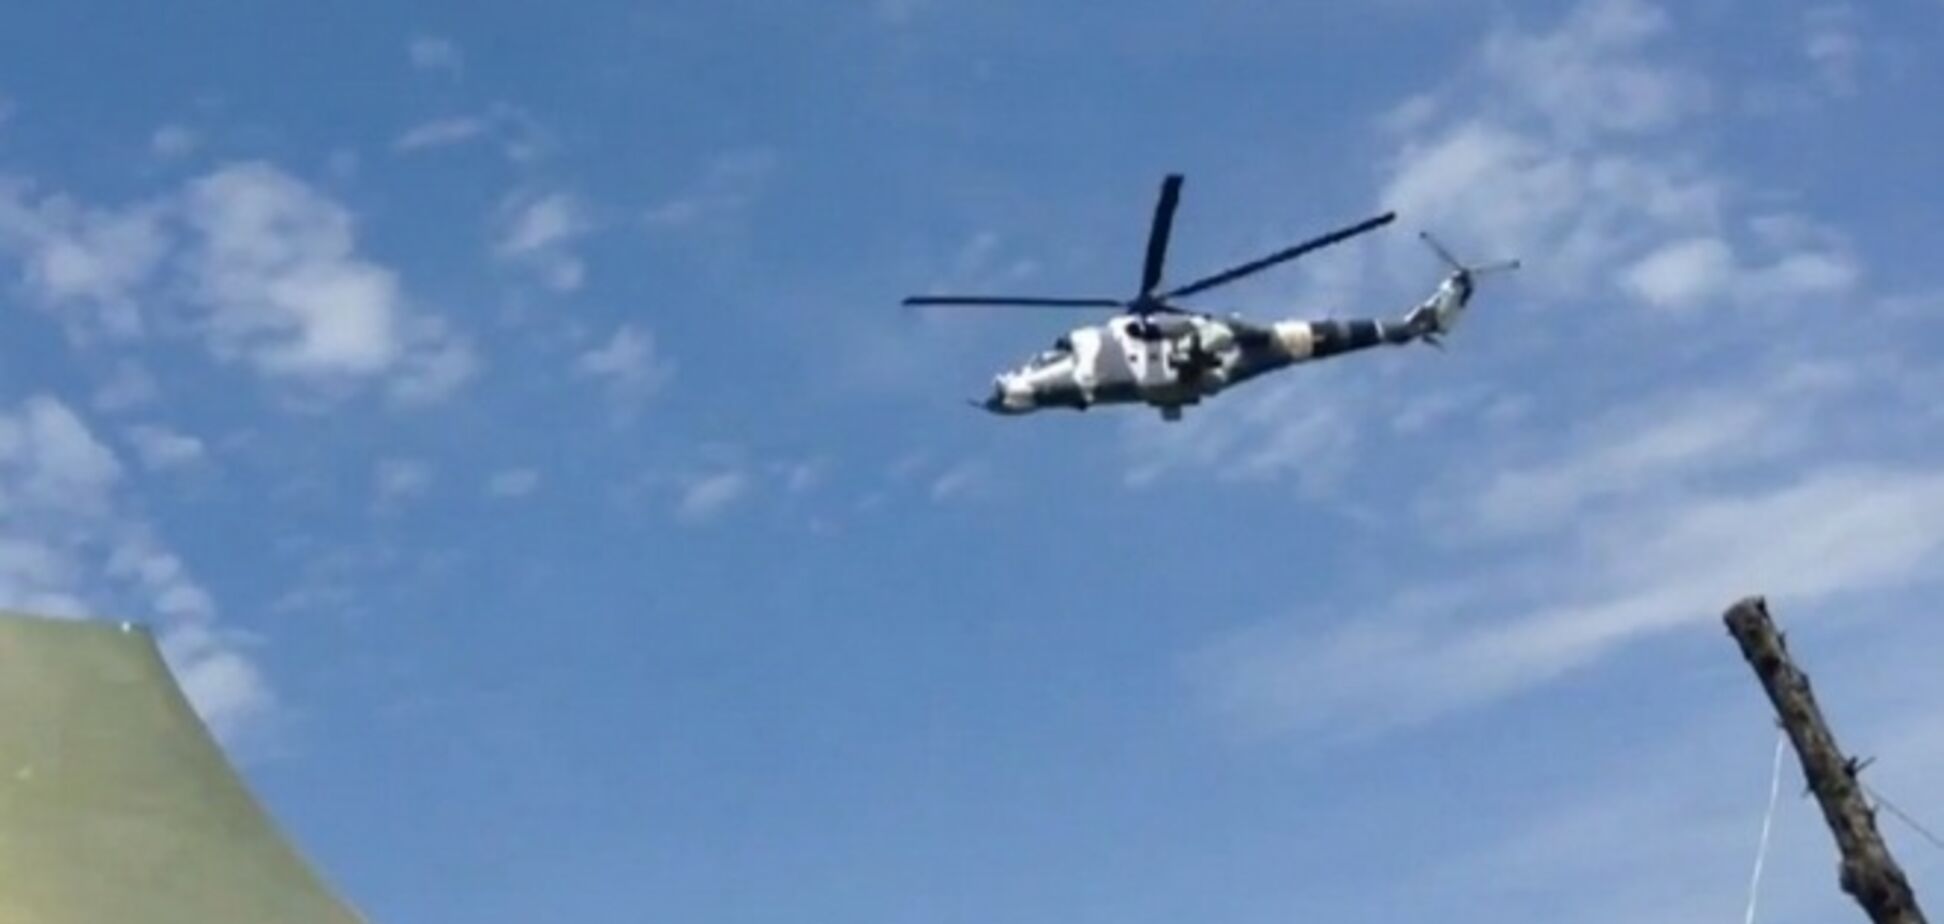 Нова система активного захисту врятувала українські військові вертольоти в Донецьку